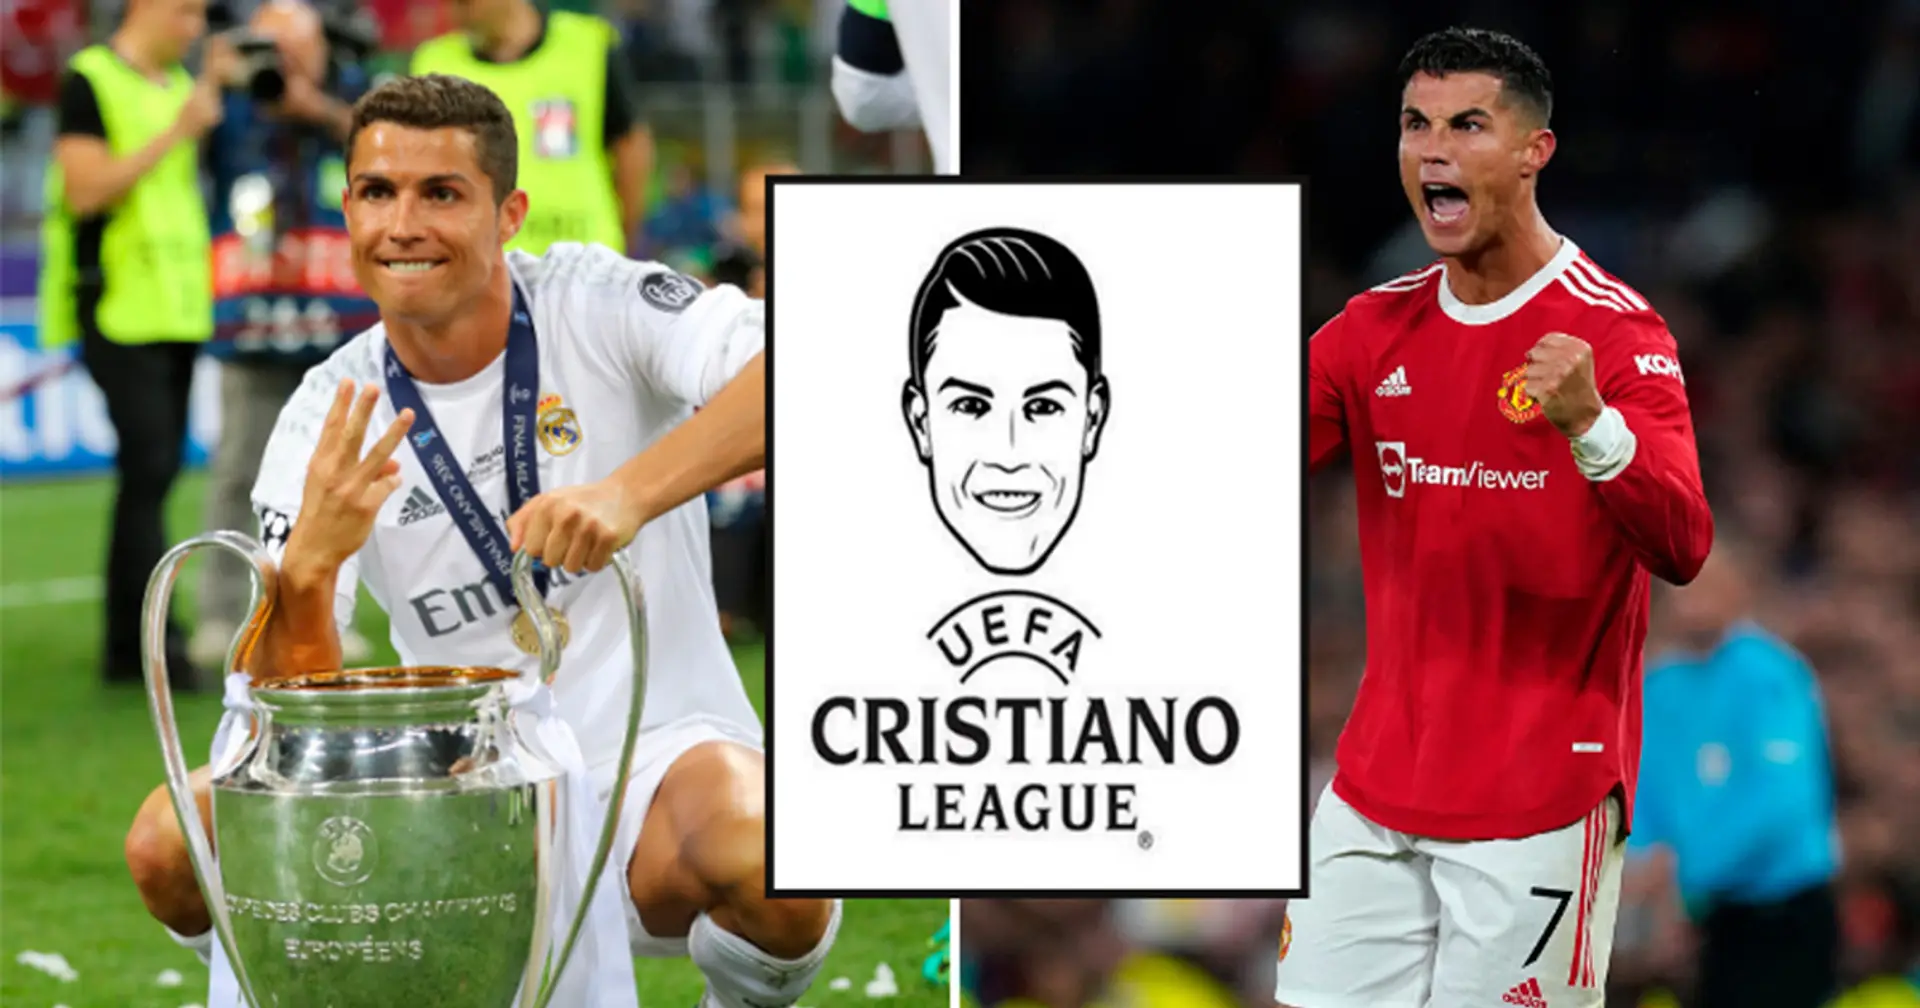 Der Grund, warum Cristiano Ronaldo in dieser Saison unbedingt in der Champions League spielen will